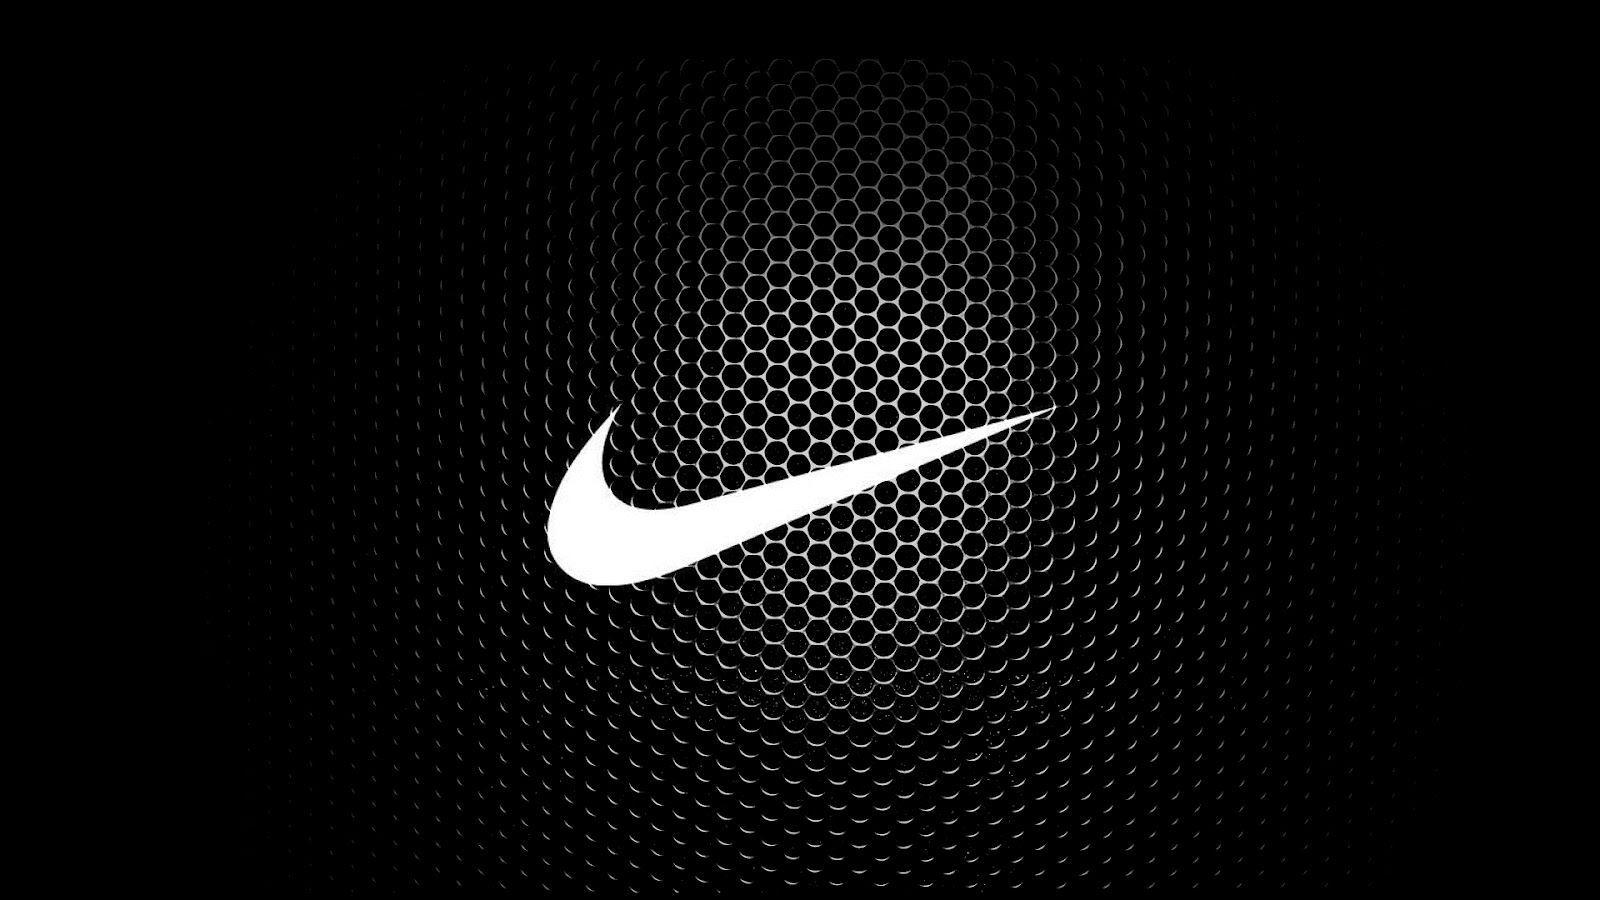 Cool Nike Logo - Nike Logo Picture. Brands Logos In 2019. Nike Wallpaper